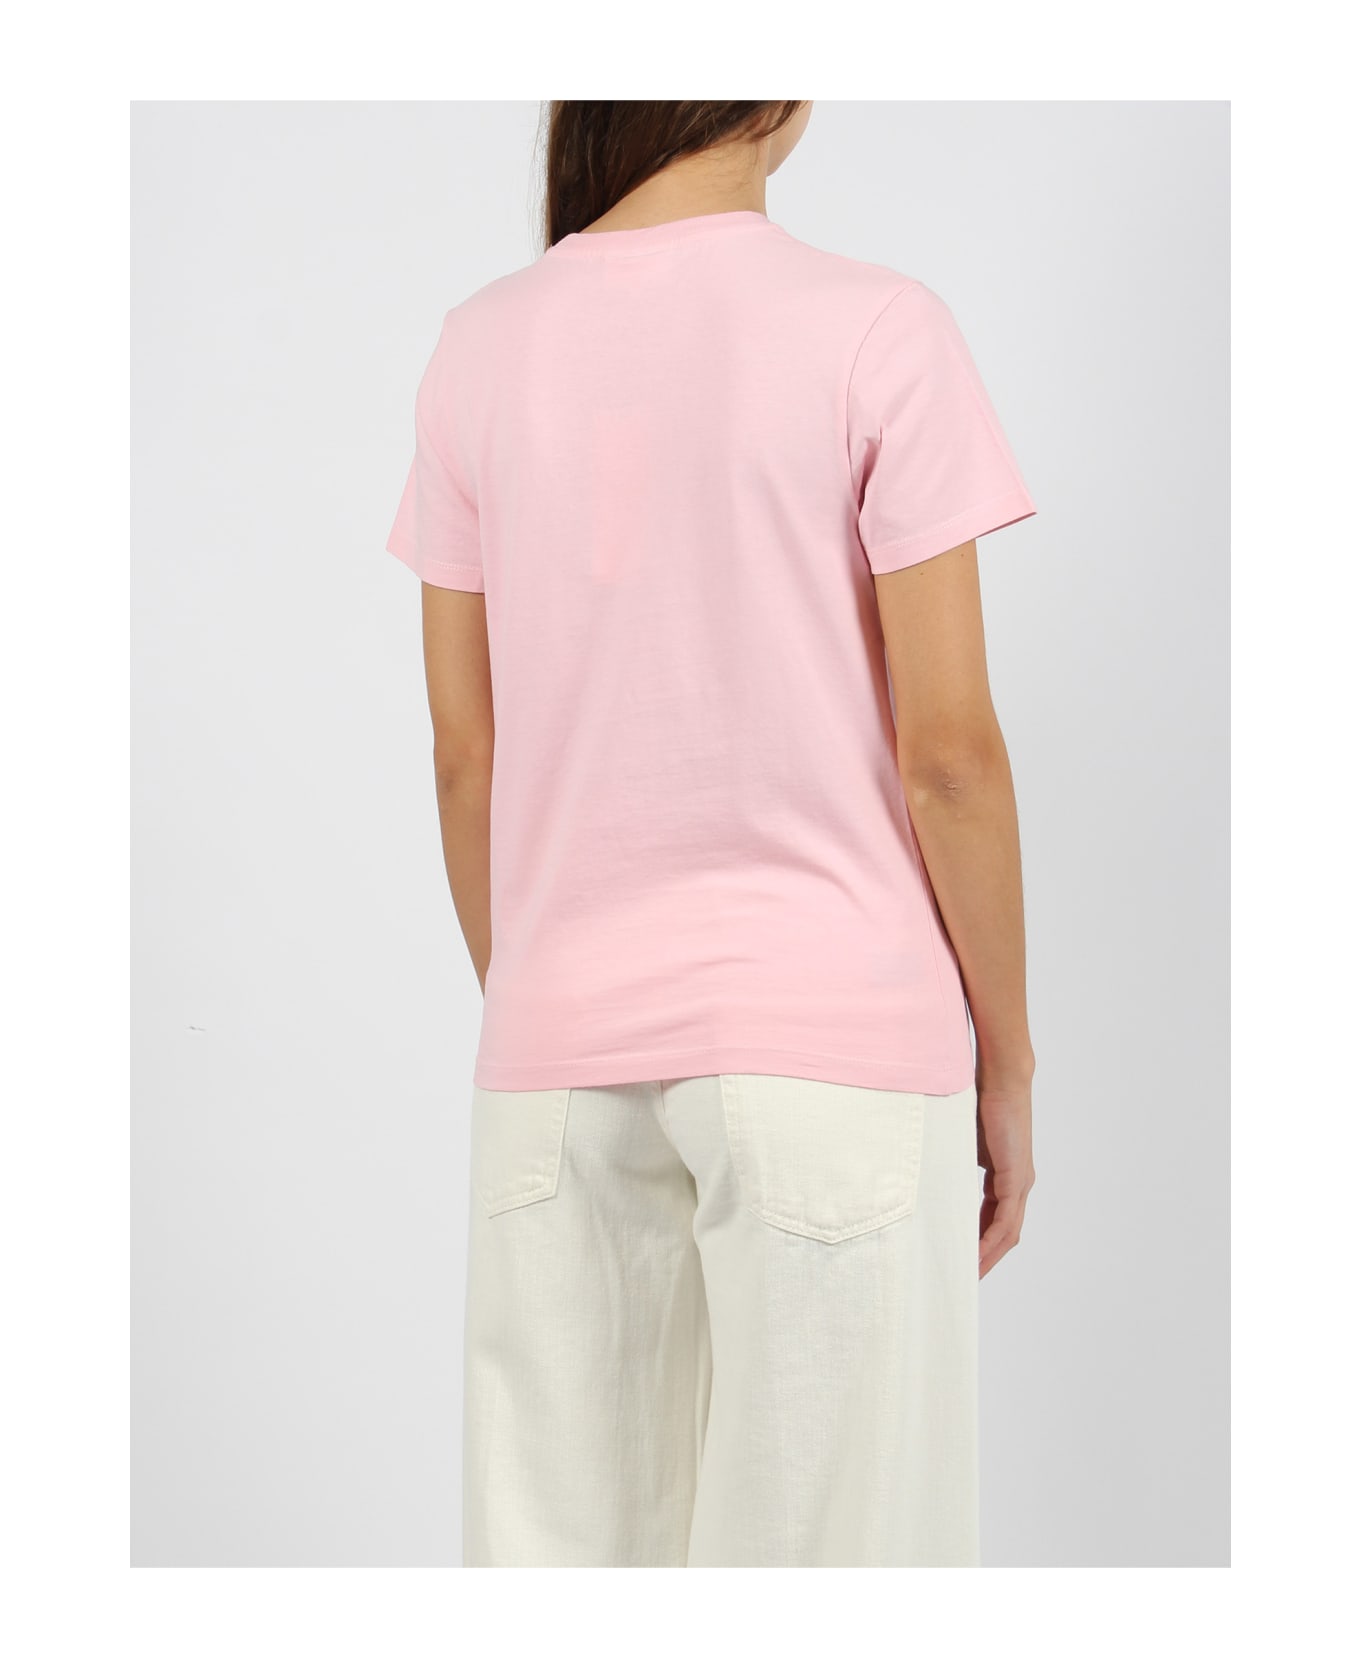 Maison Kitsuné Fox Head Patch T-shirt - Pink & Purple Tシャツ